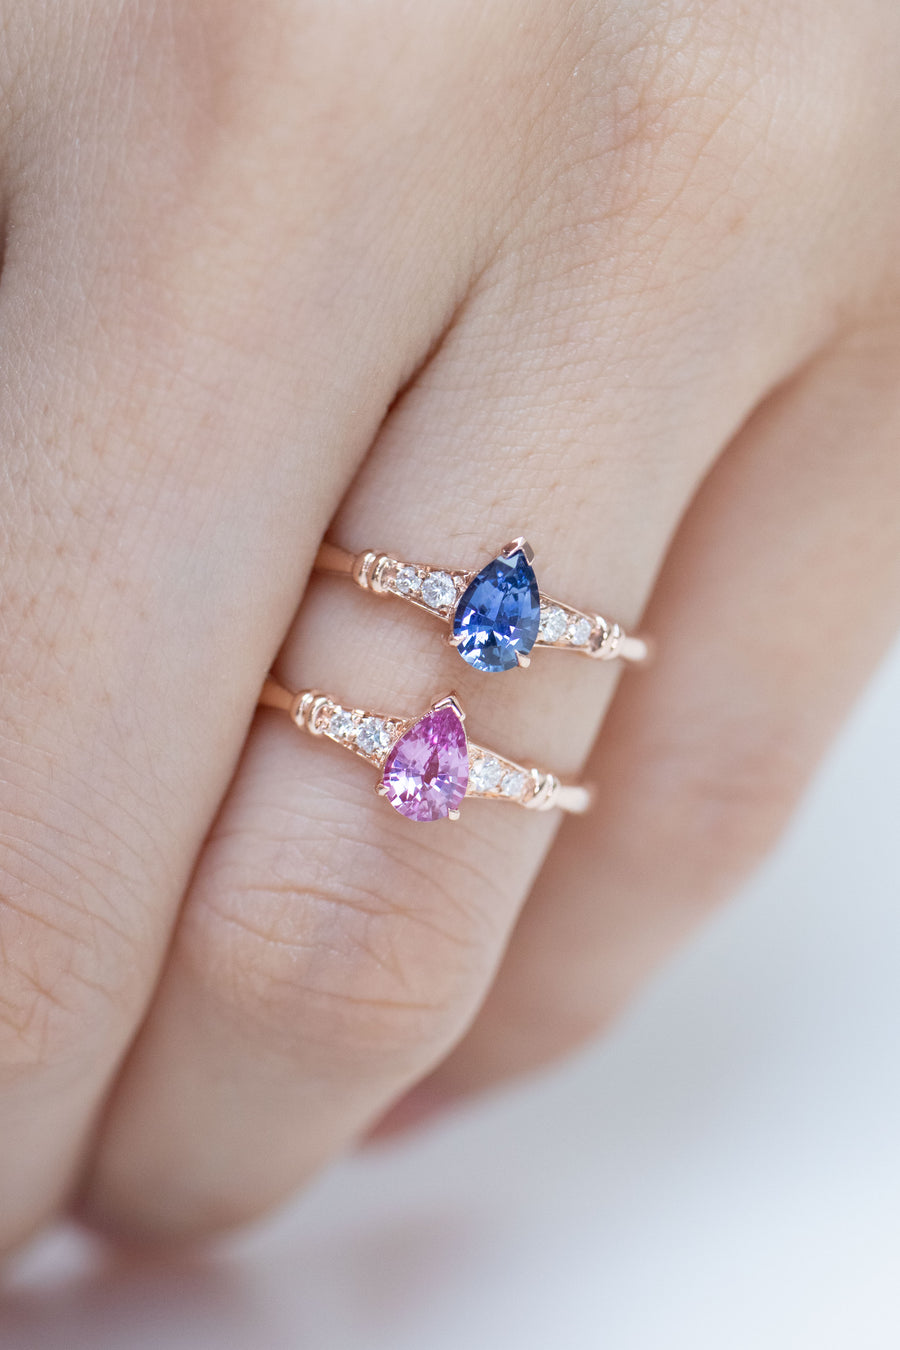 0.45carat Pear Pink Sapphire & total 0.06carat Diamonds 18K Rose Gold Ring